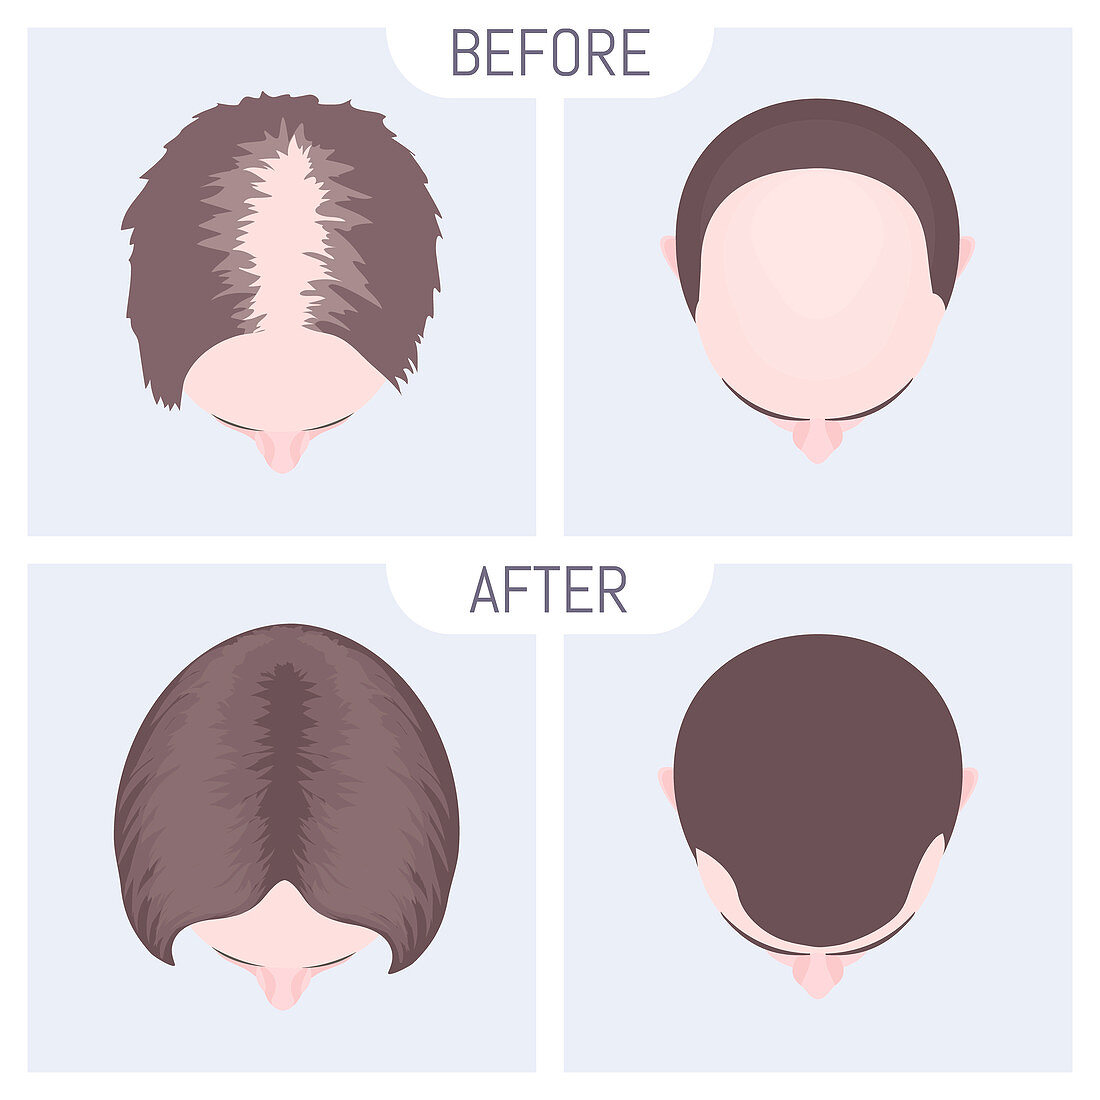 Female and male alopecia treatment, illustration